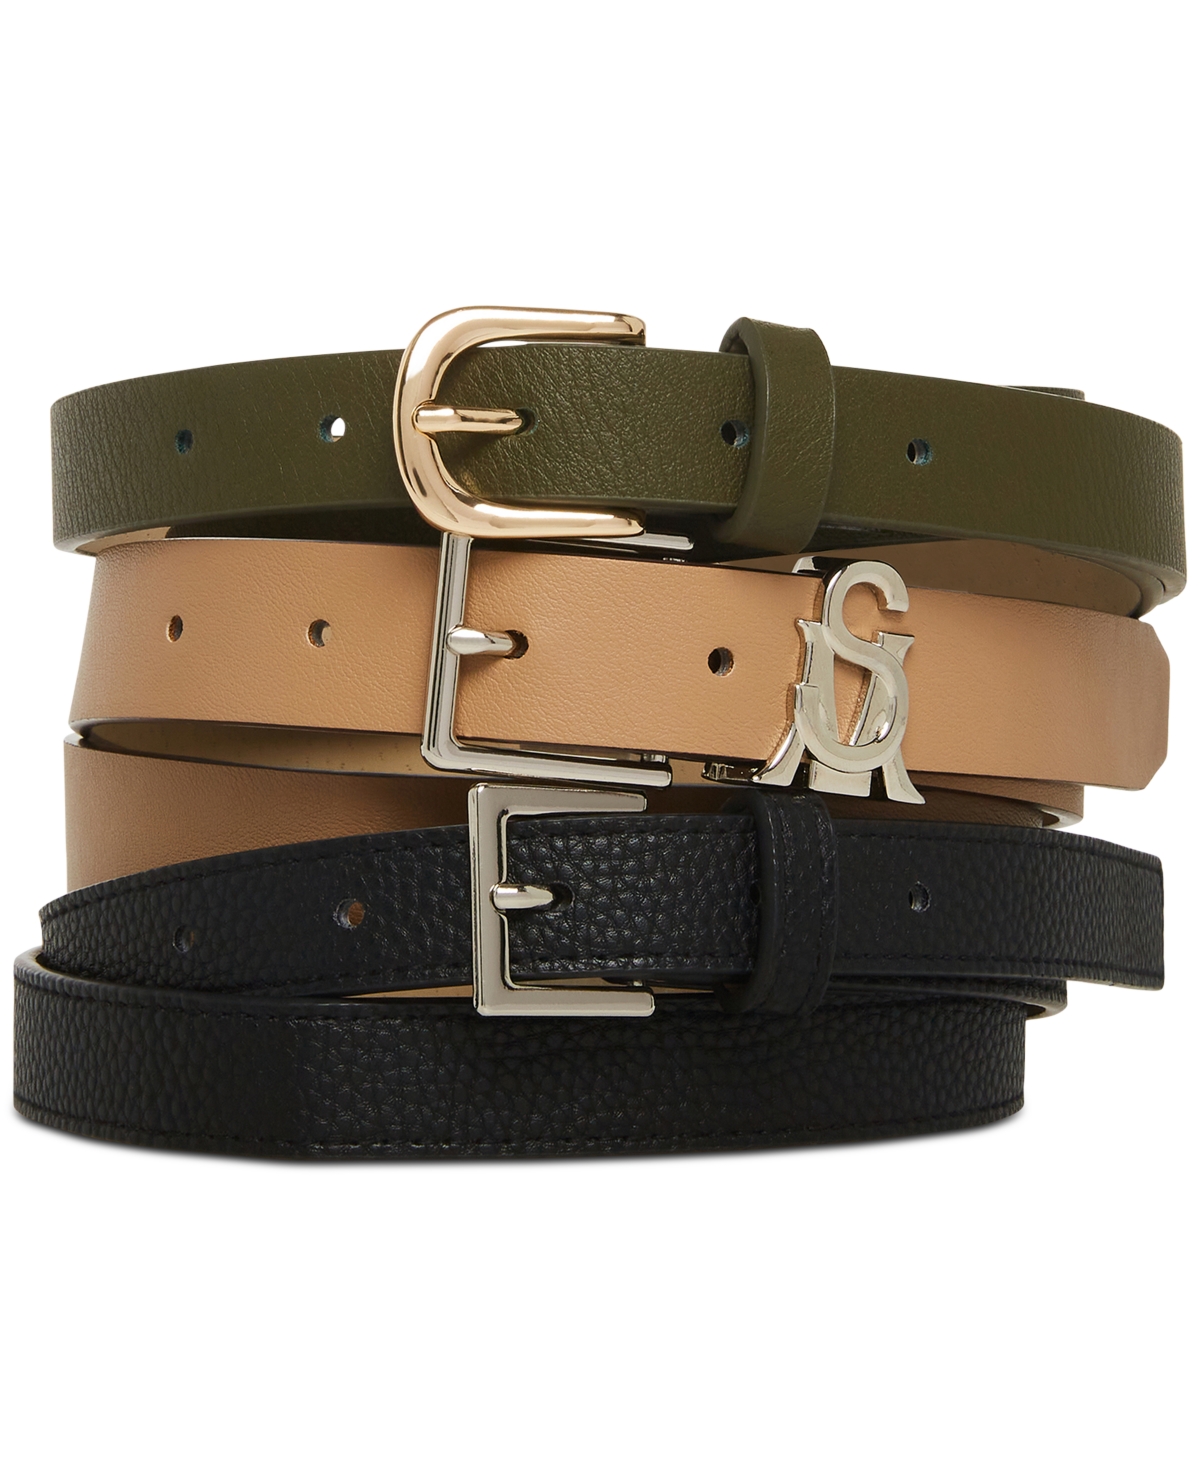 Steve Madden Versatile Women's 3-pk. Faux-leather Belts In Olive Multi